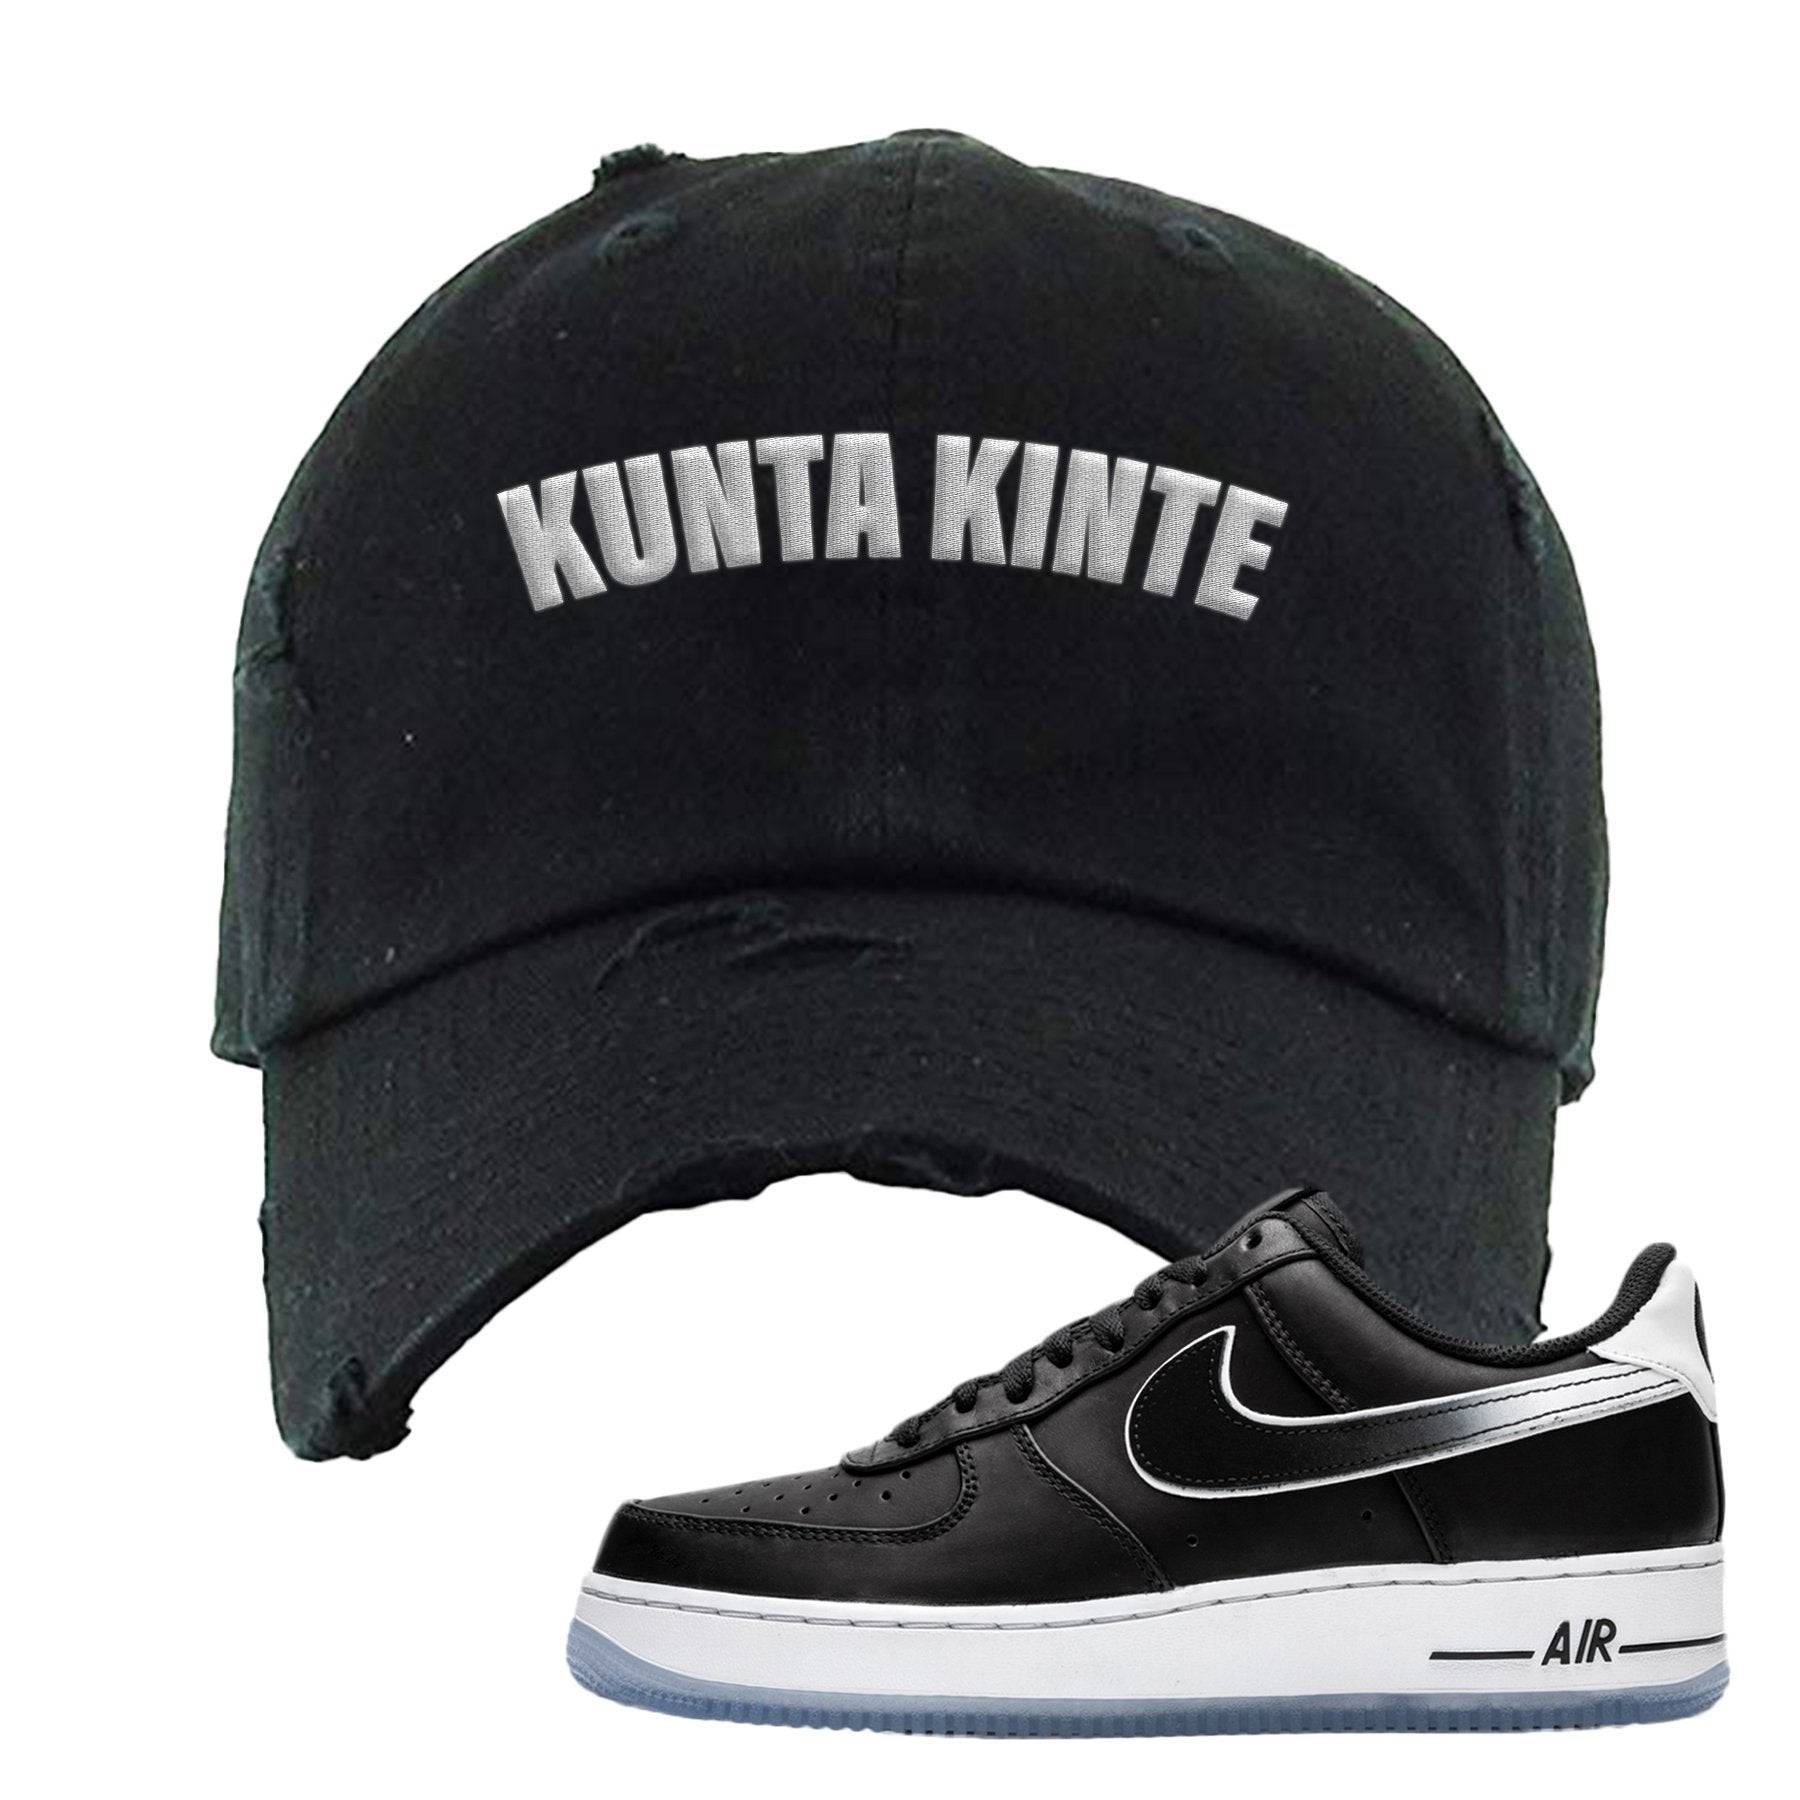 Colin Kaepernick X Air Force 1 Low Kunta Kinte Black Sneaker Hook Up Distressed Dad Hat